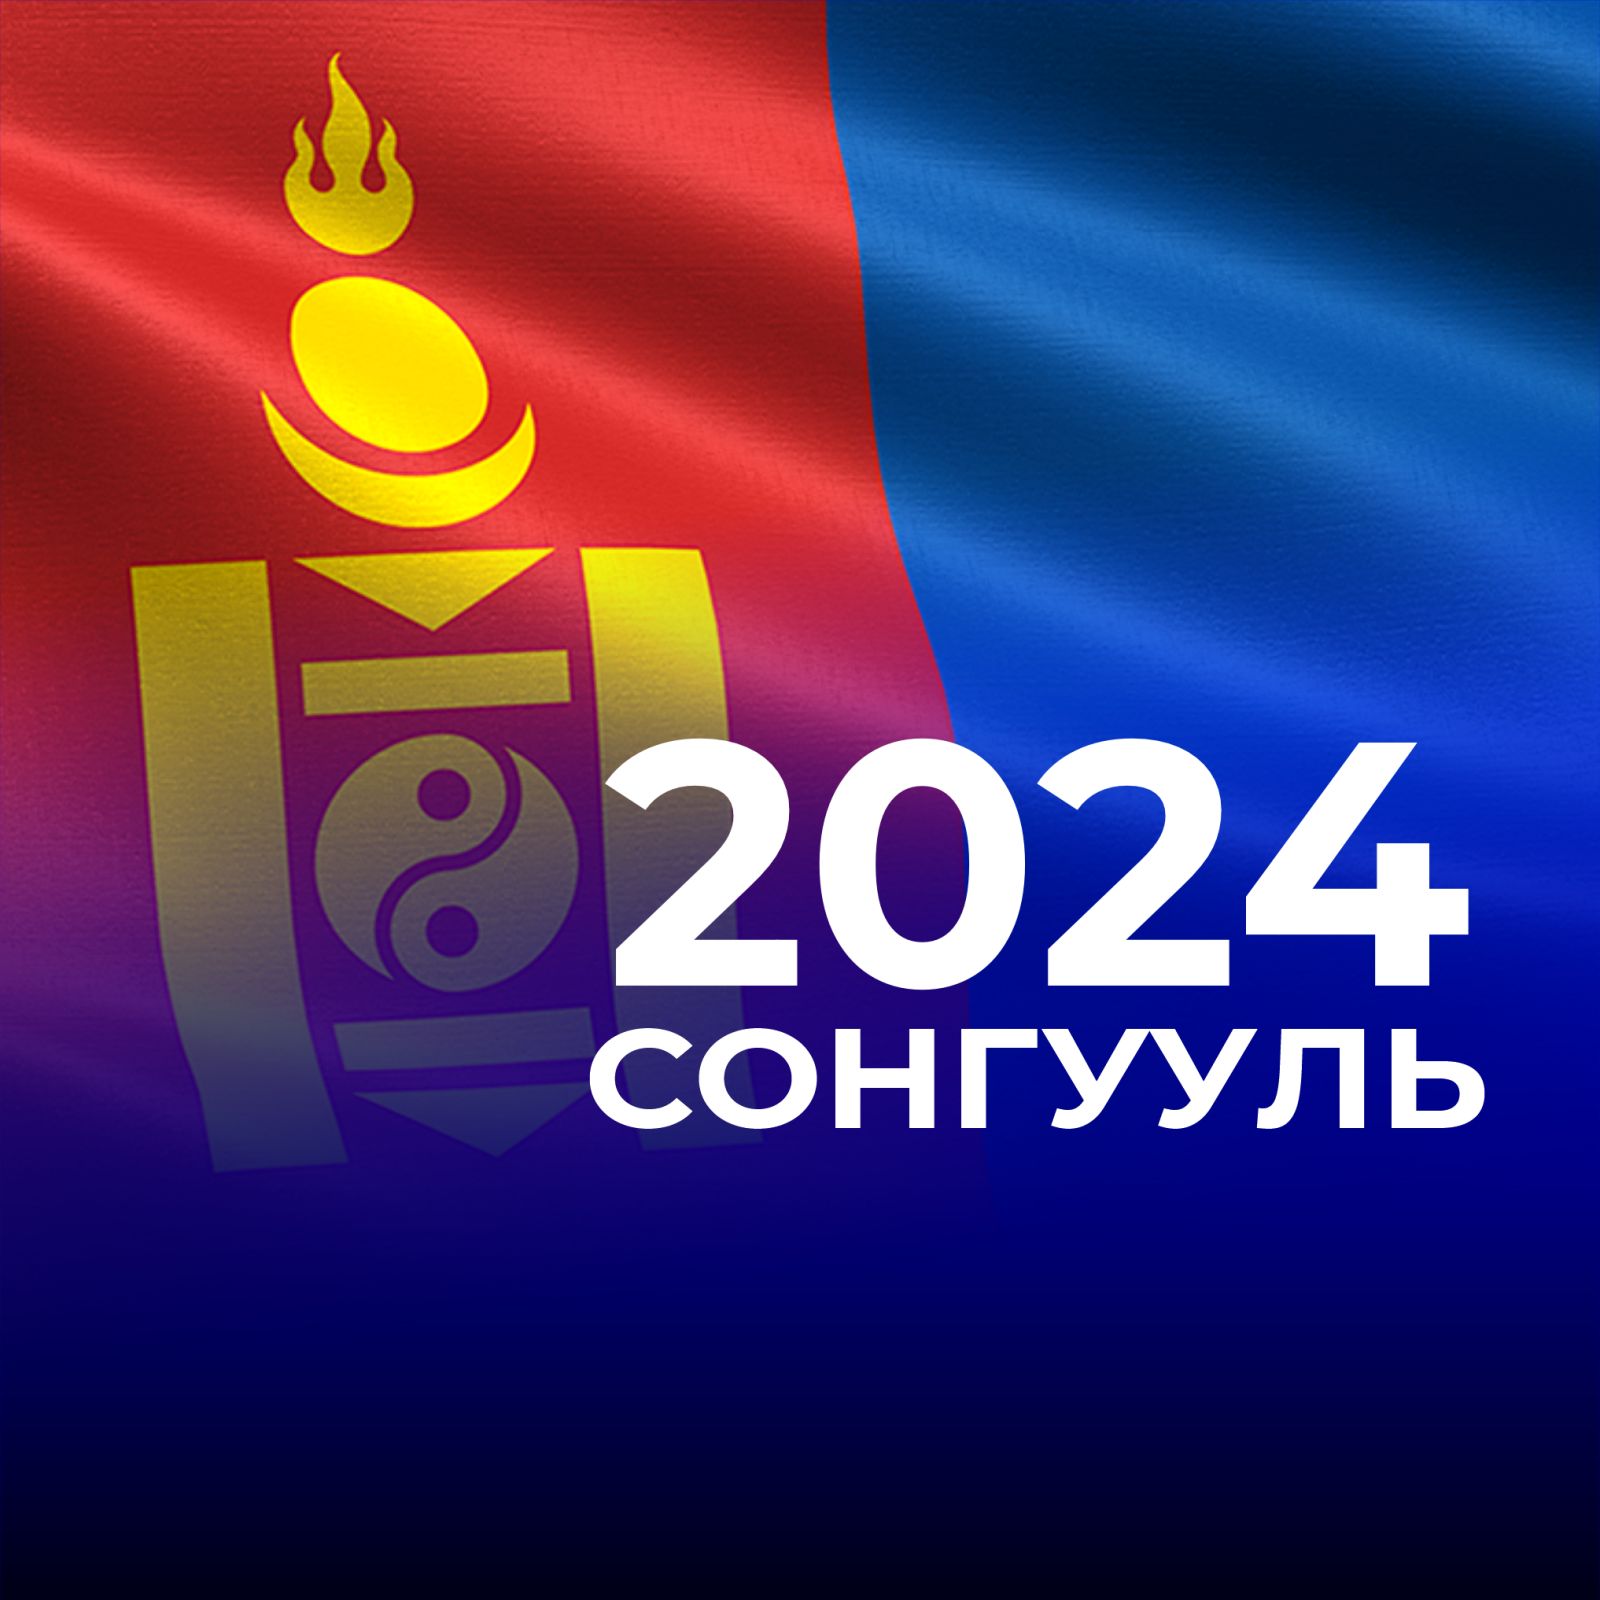 Дорнод аймгийн иргэдийн Төлөөлөгчдийн Хурлын 2024 оны ээлжит сонгуульд нам, эвсэл, нэр дэвшигчээс зарцуулах зардлын дээд хэмжээг тогтоолоо